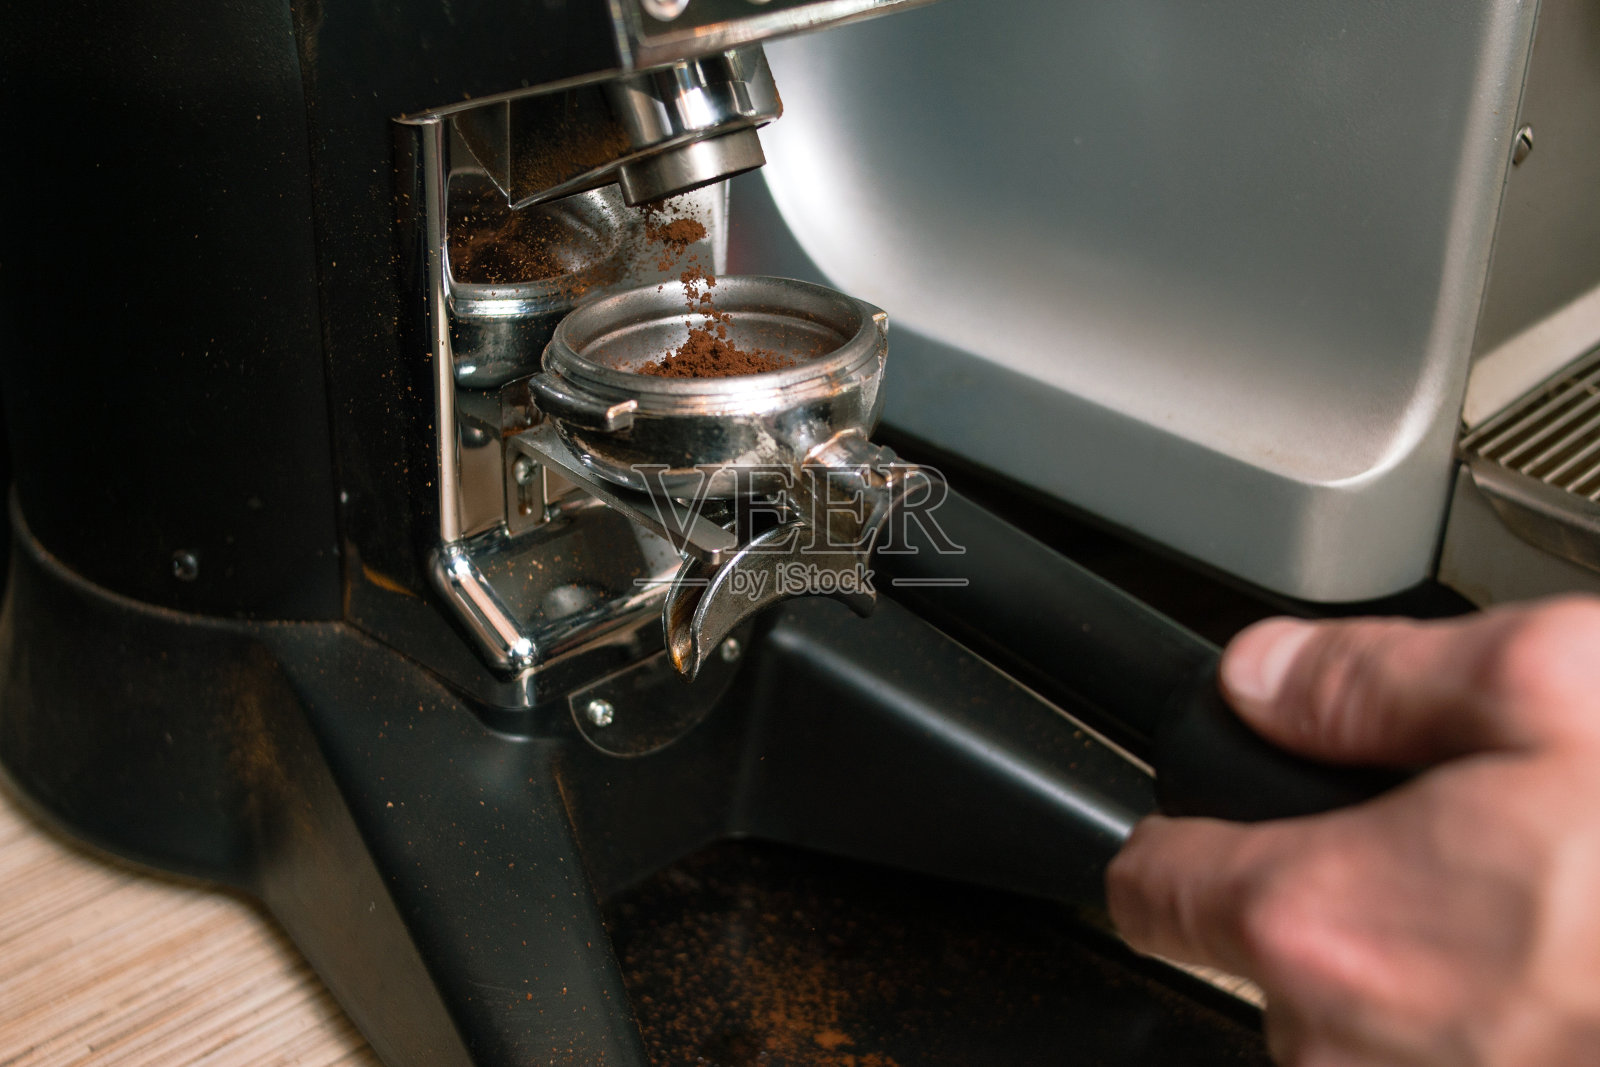 研磨咖啡粉浇注架设备照片摄影图片